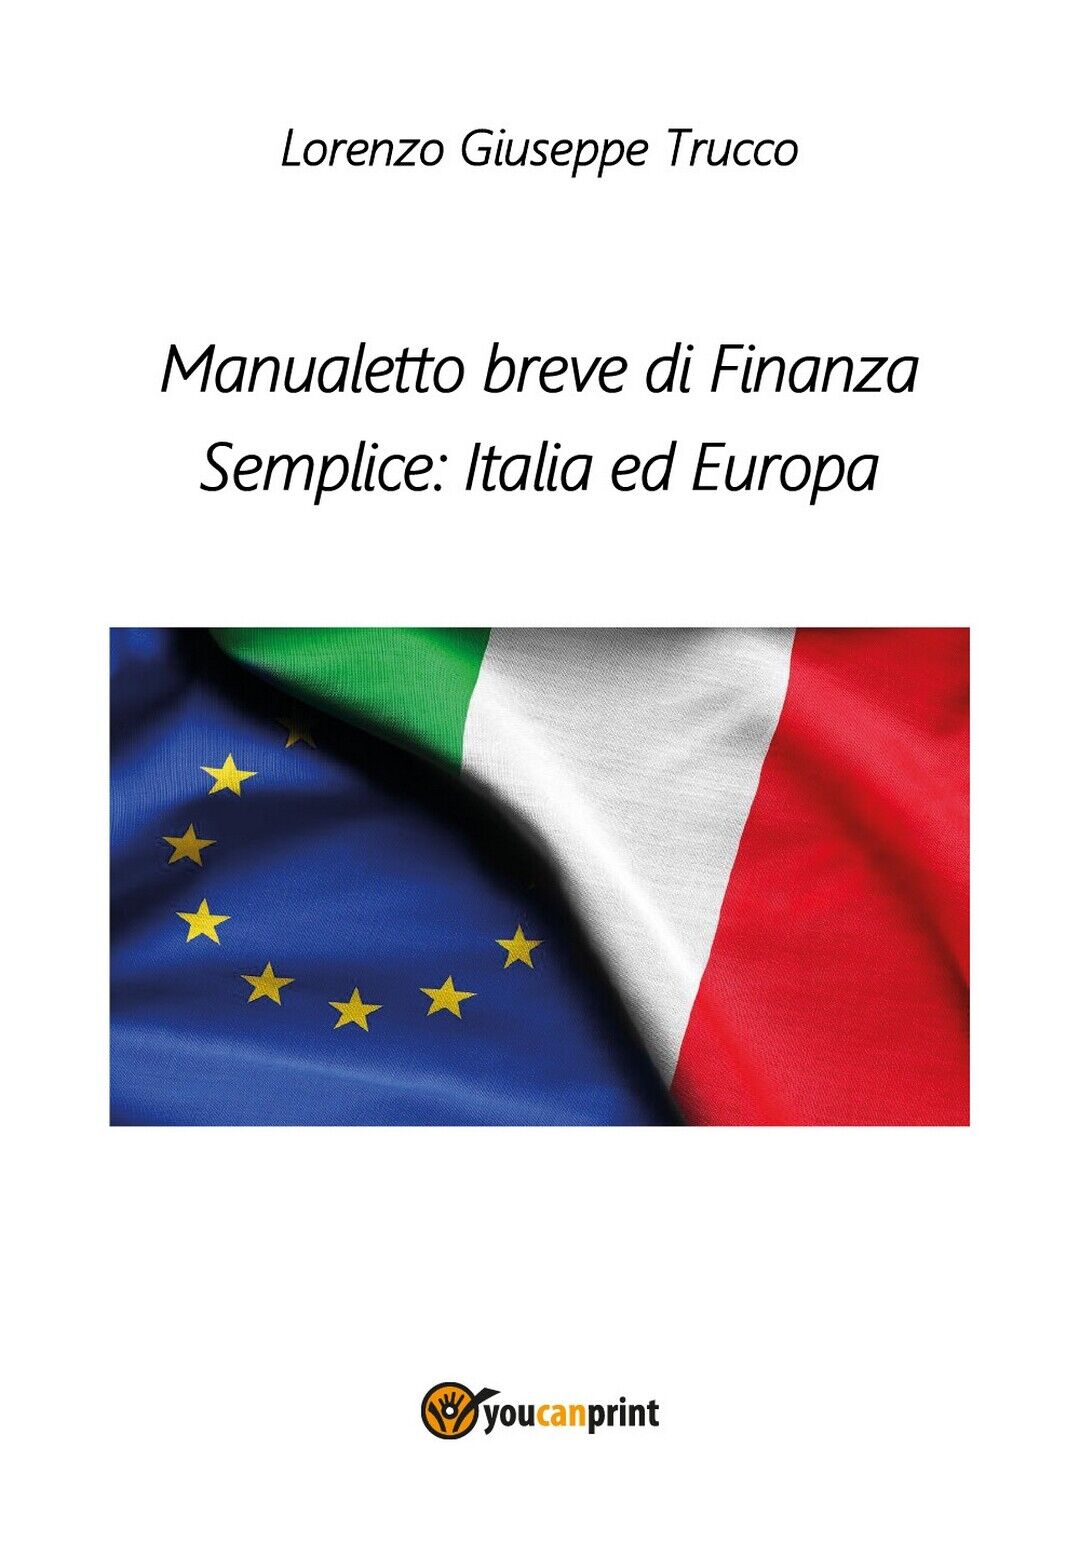 Manualetto breve di Finanza Semplice: Italia ed Europa, Lorenzo Giuseppe Trucco libro usato